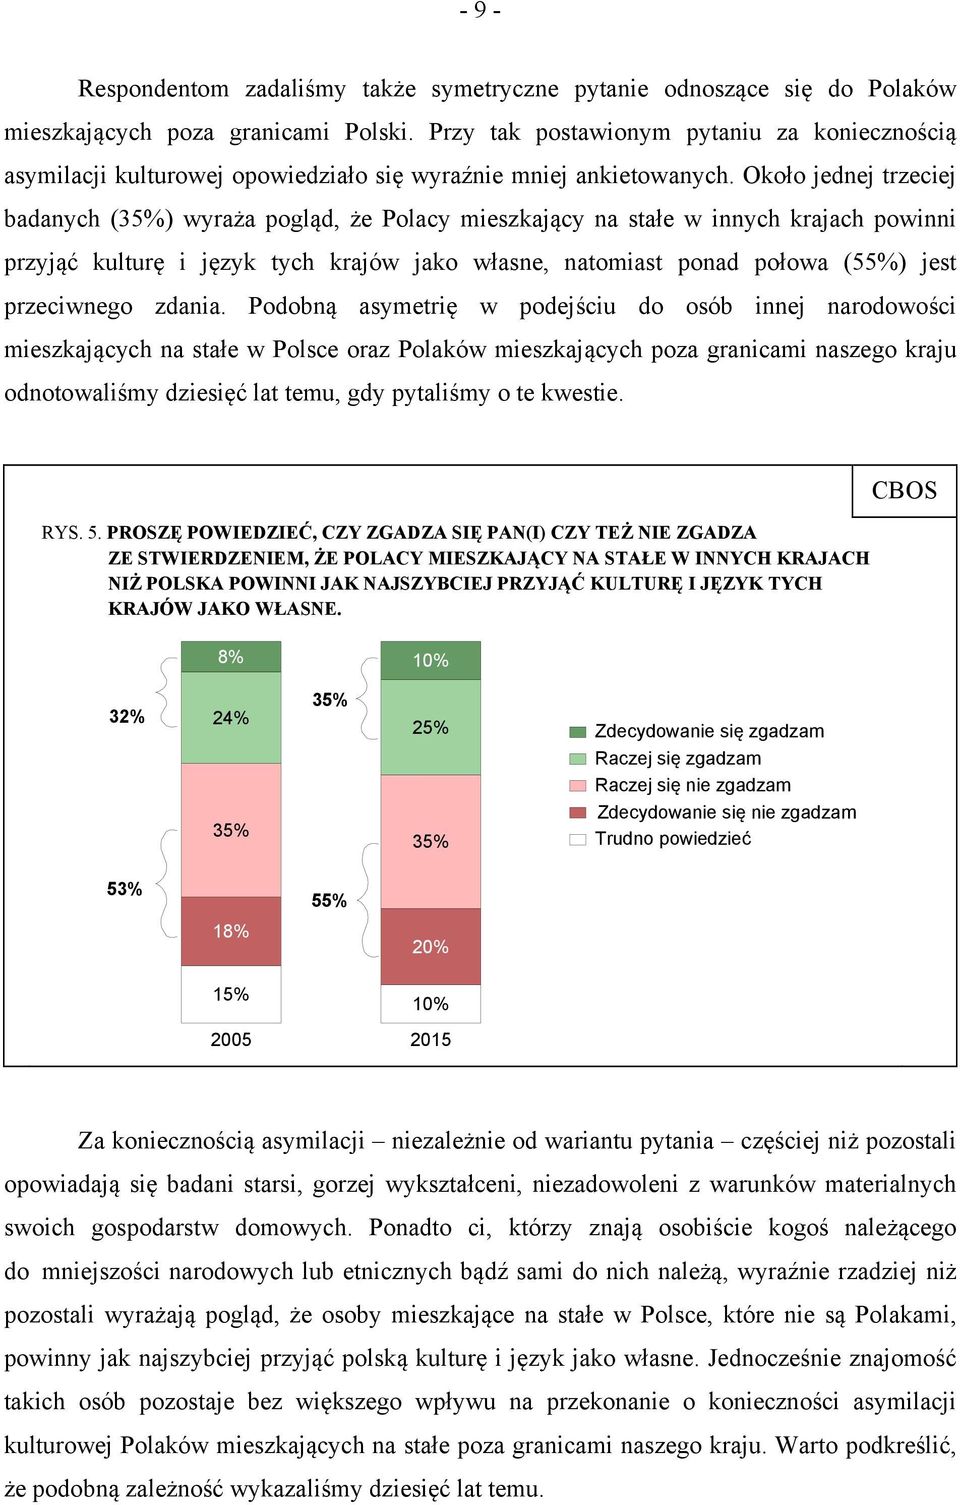 Około jednej trzeciej badanych (35%) wyraża pogląd, że Polacy mieszkający na stałe w innych krajach powinni przyjąć kulturę i język tych krajów jako własne, natomiast ponad połowa (55%) jest